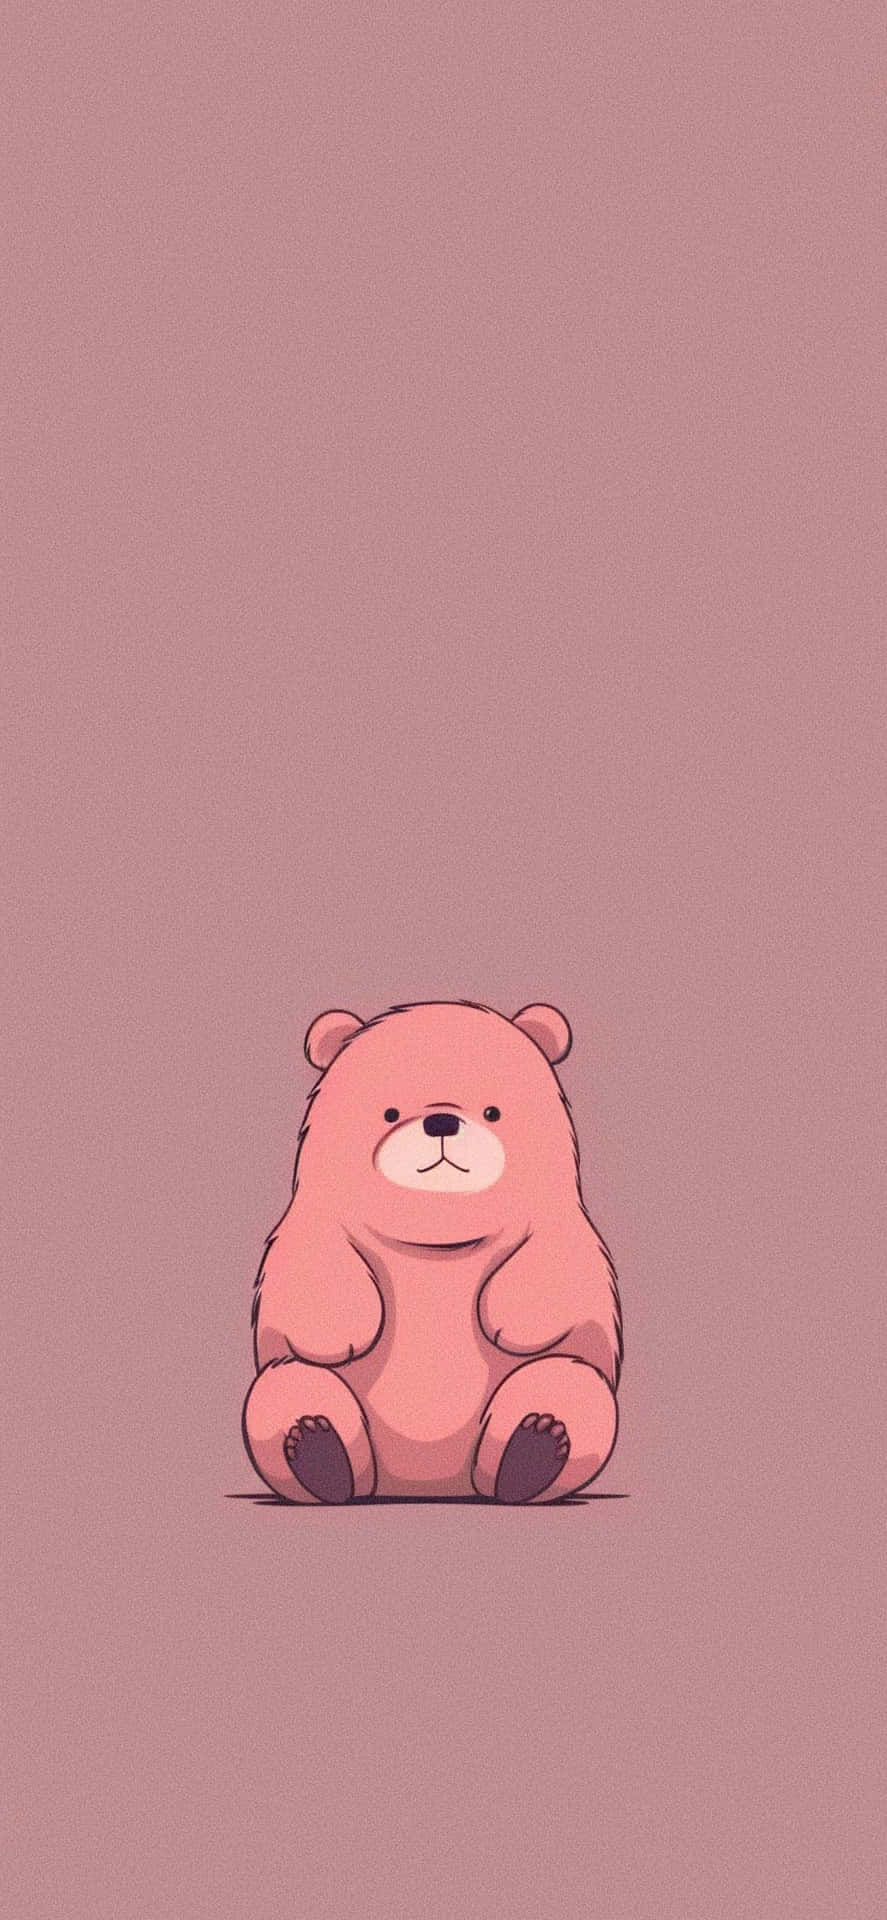 Cute Sitting Aesthetic Bear Wallpaper